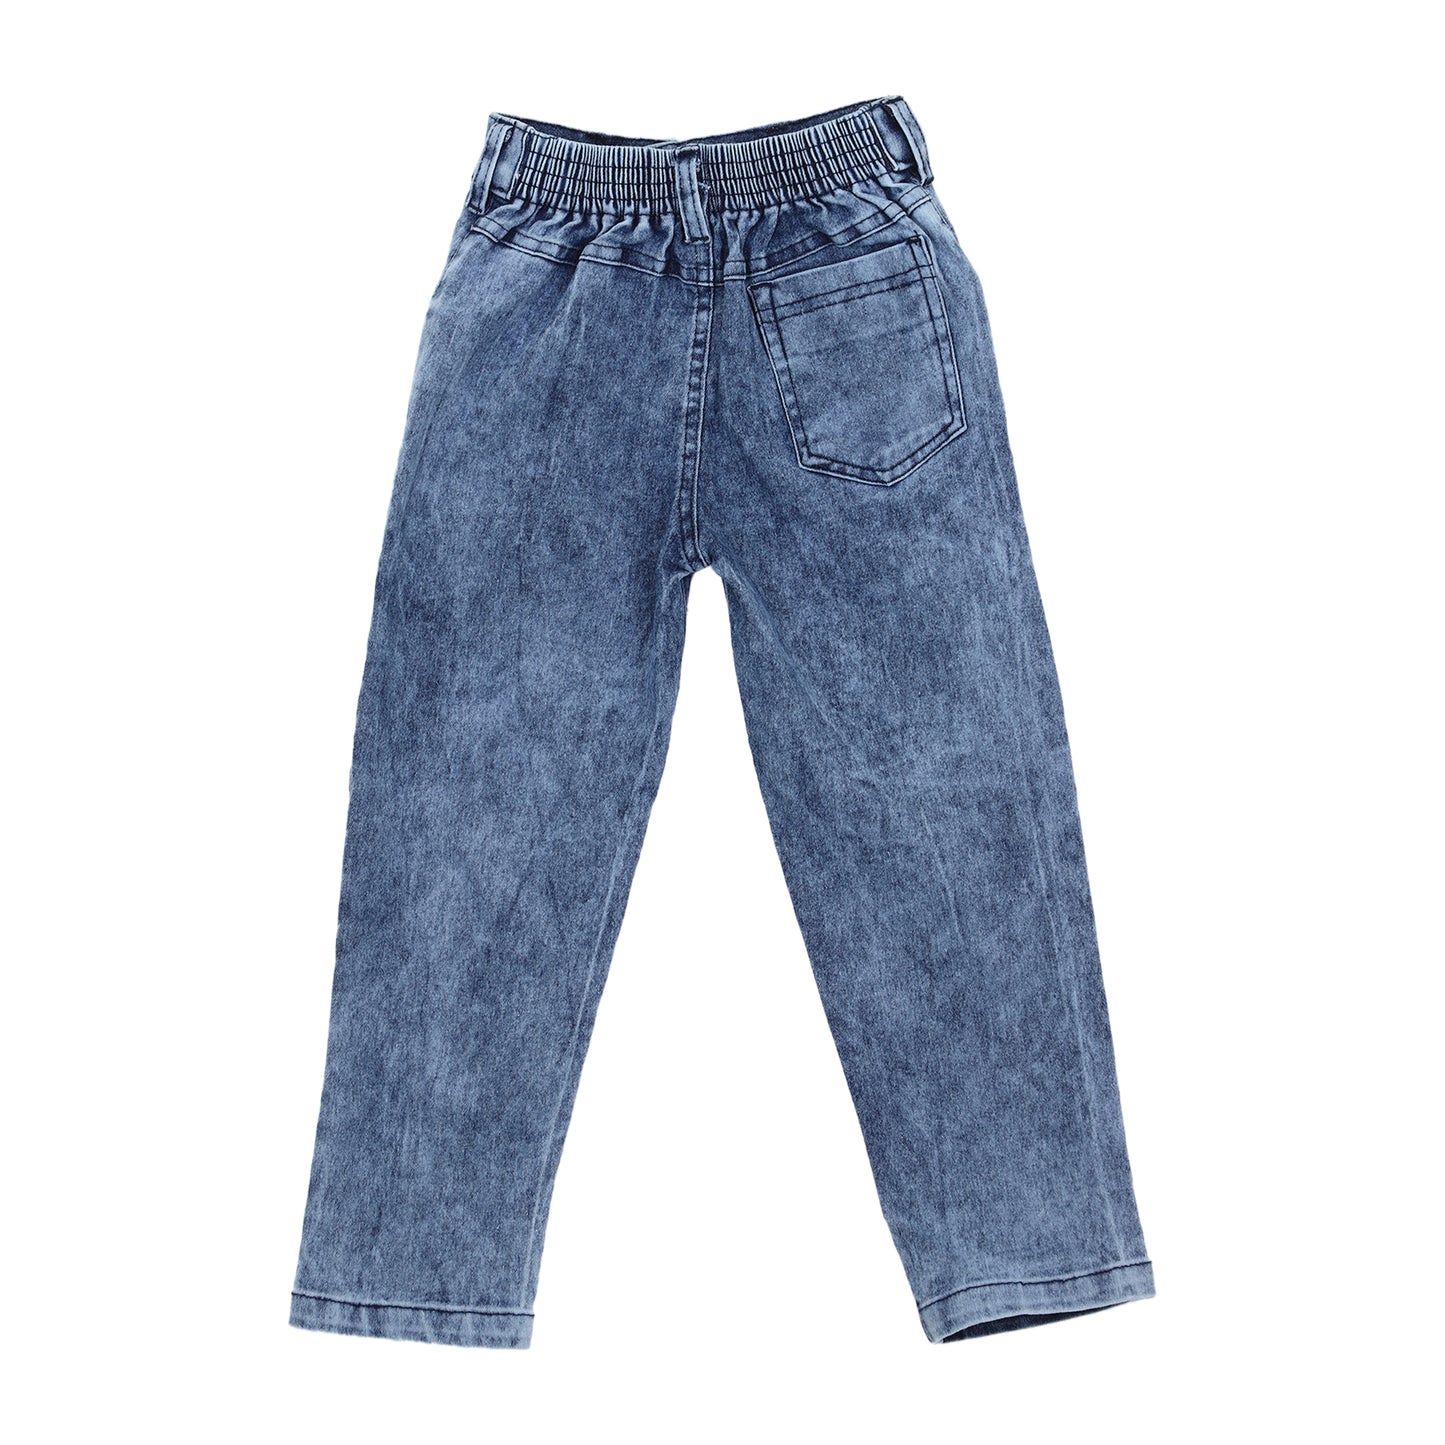 Denim Jeans for Girls - 7